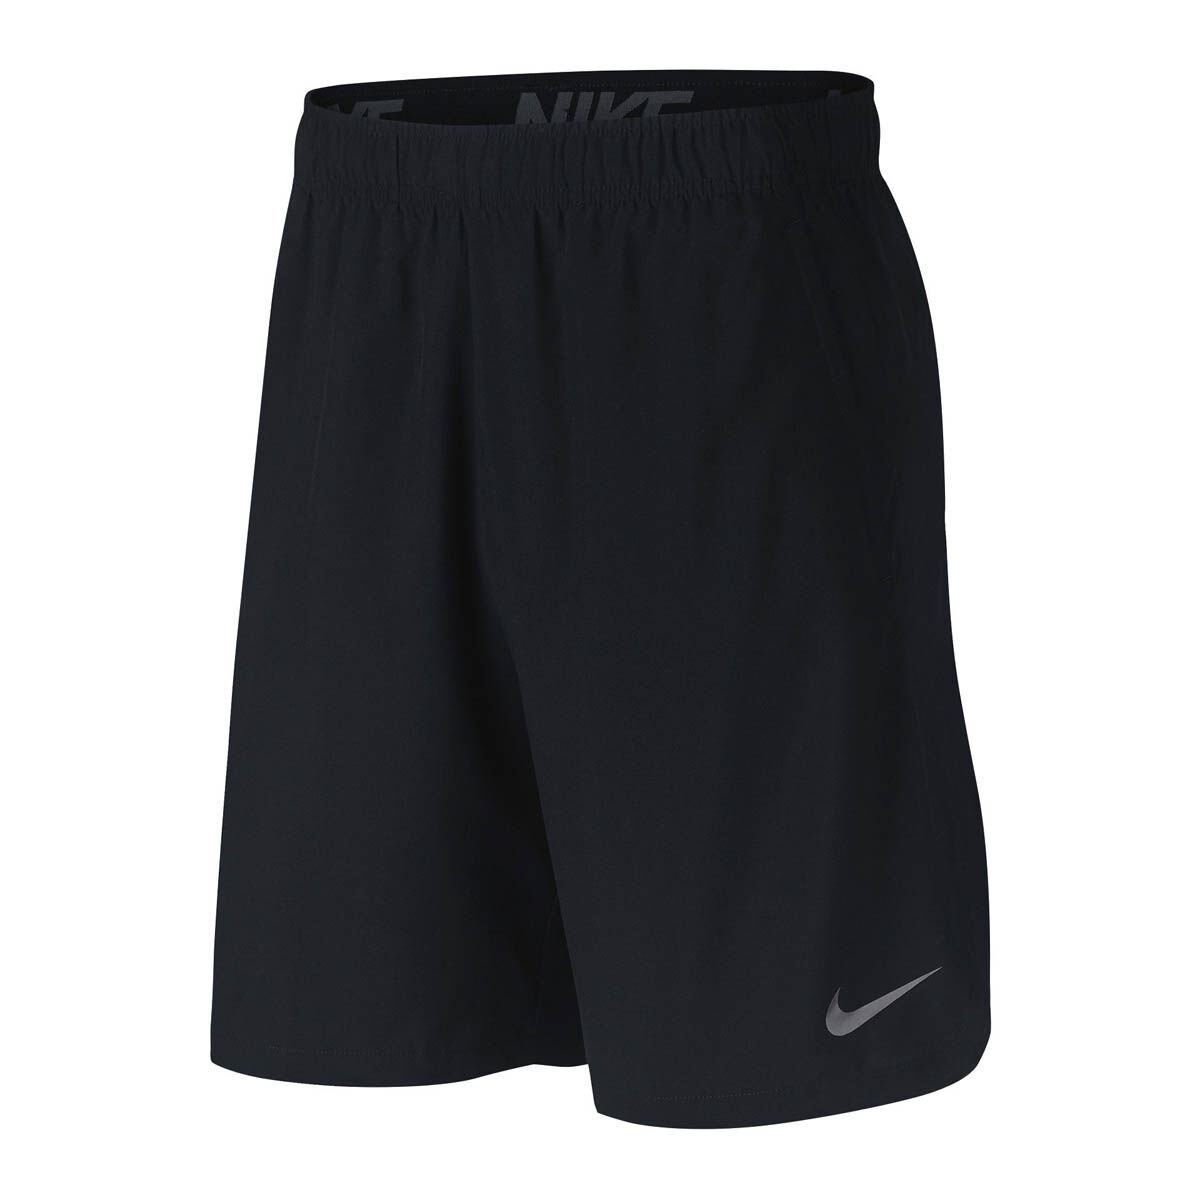 Nike Mens Flex 2 Woven Shorts Black S 